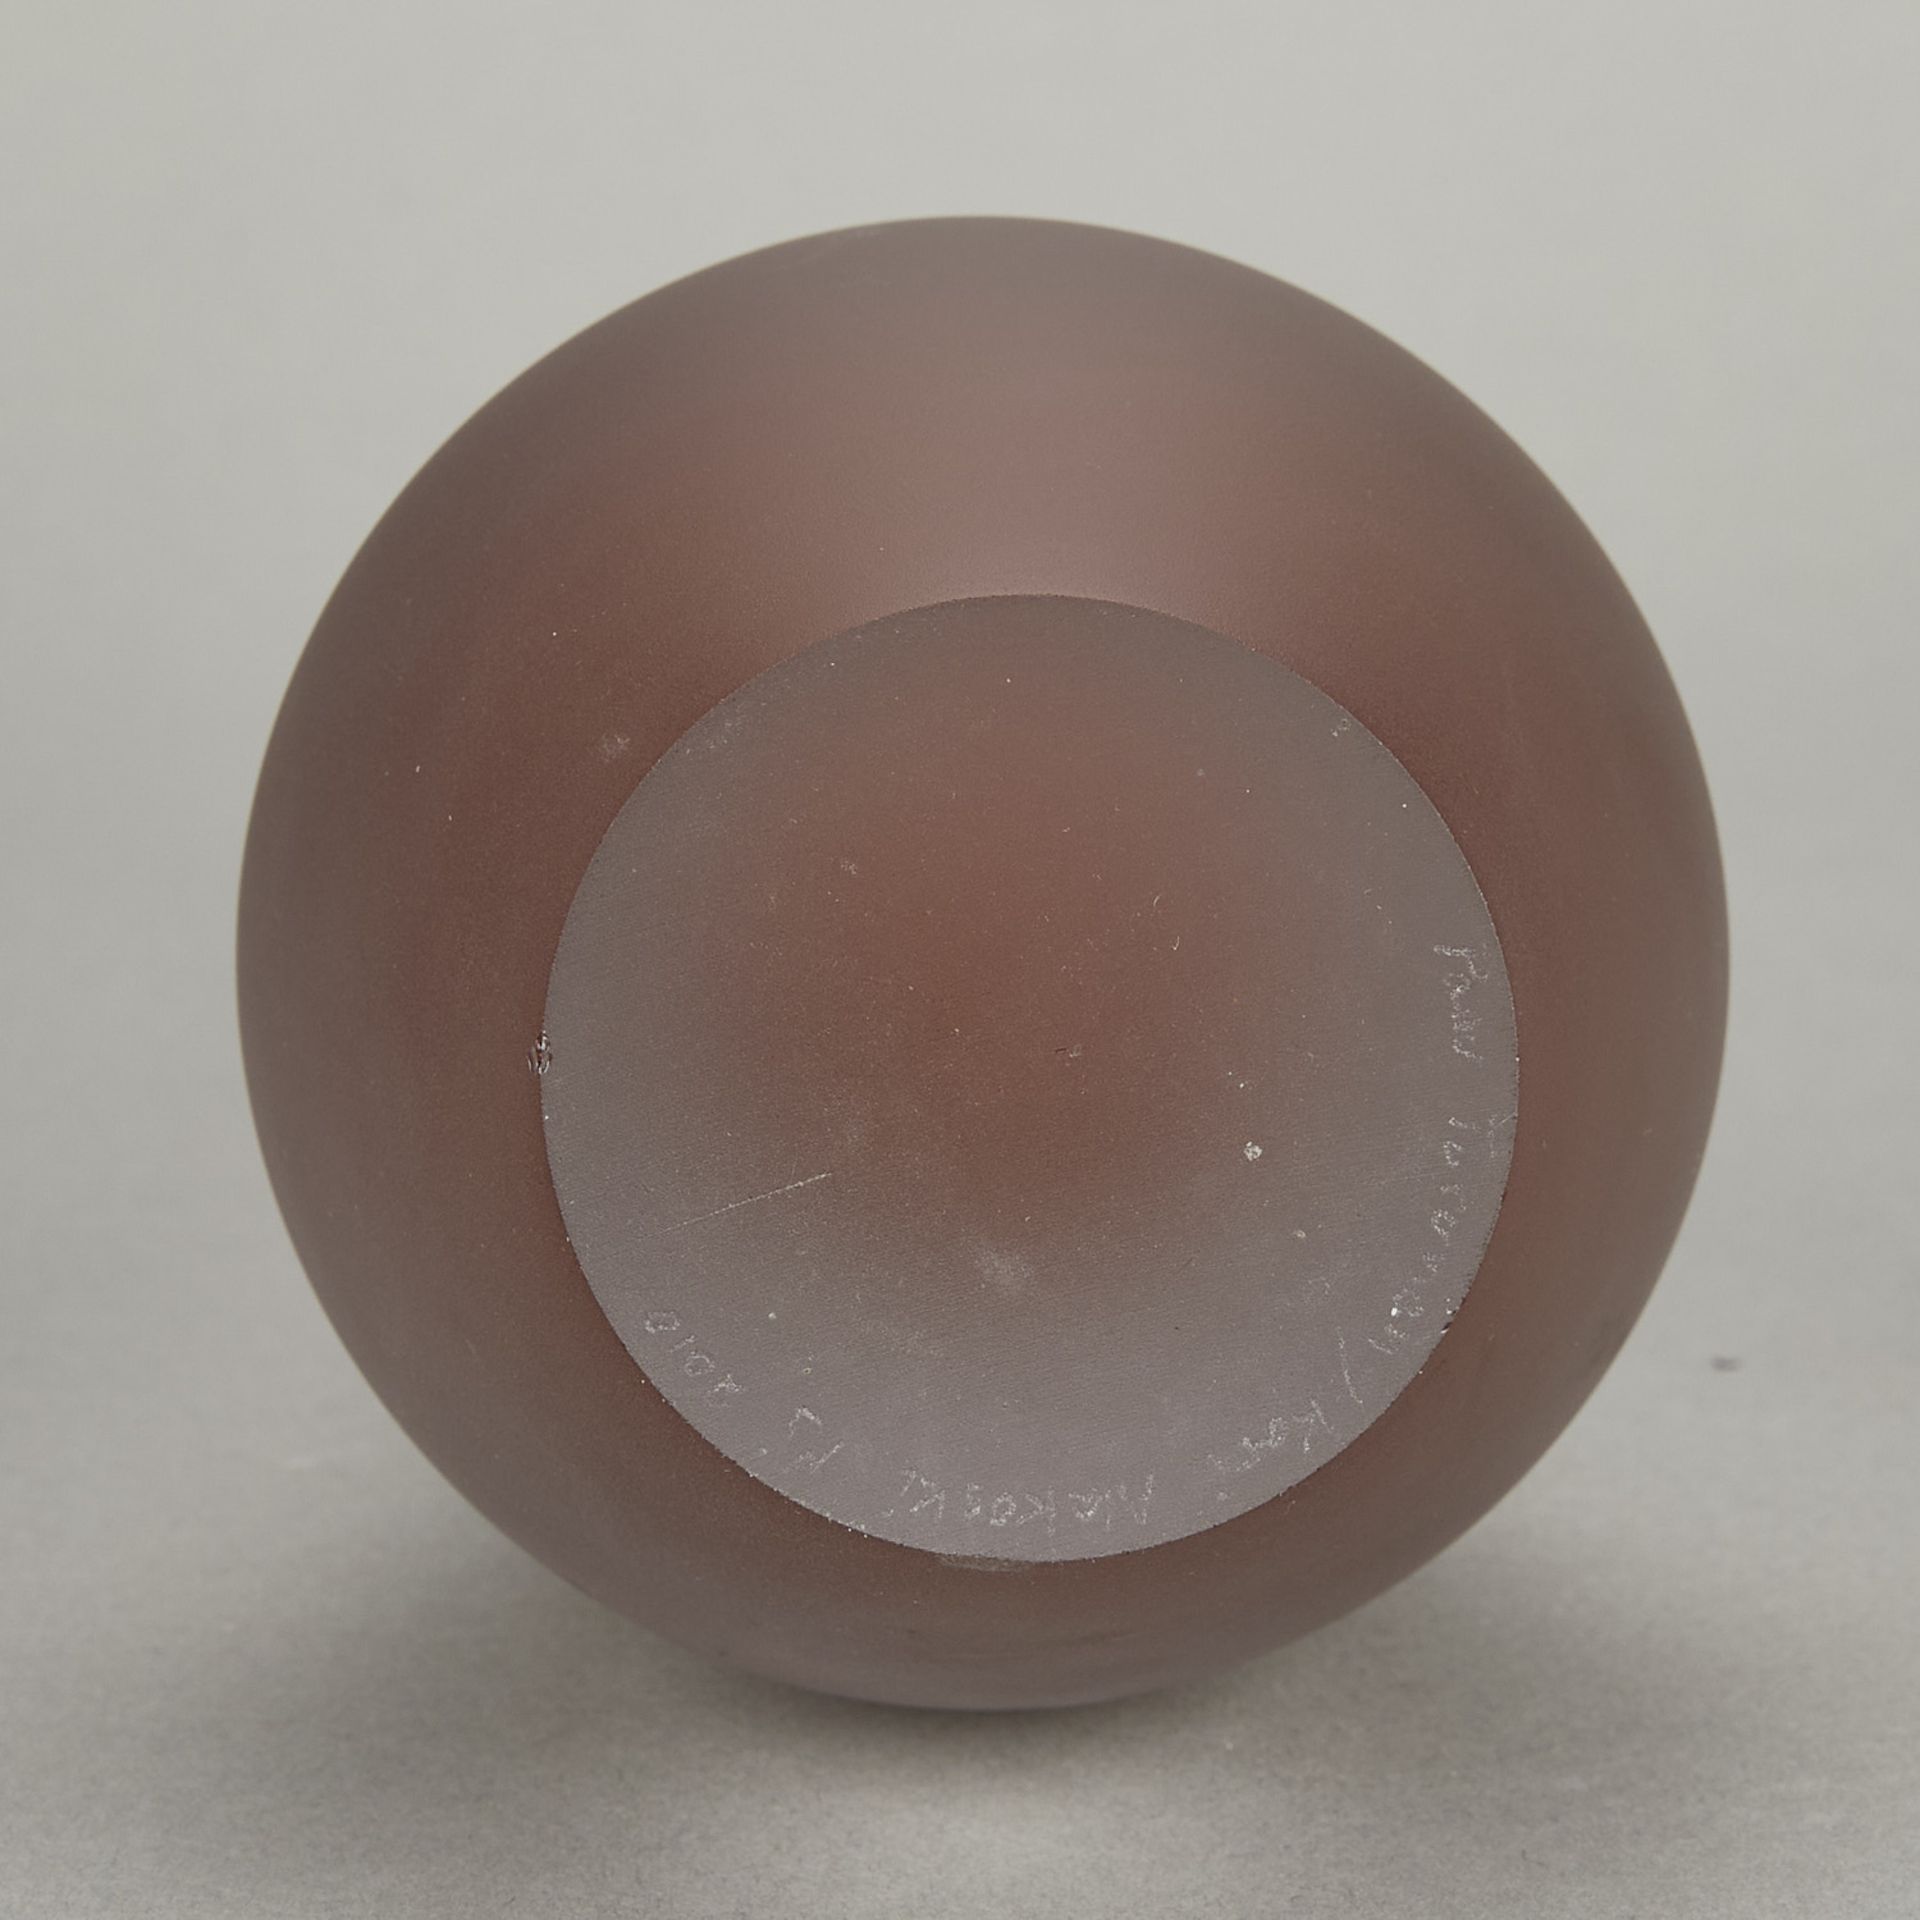 Panu Turunen & Kari Alakoski "Drop" Glass Vase - Image 7 of 8